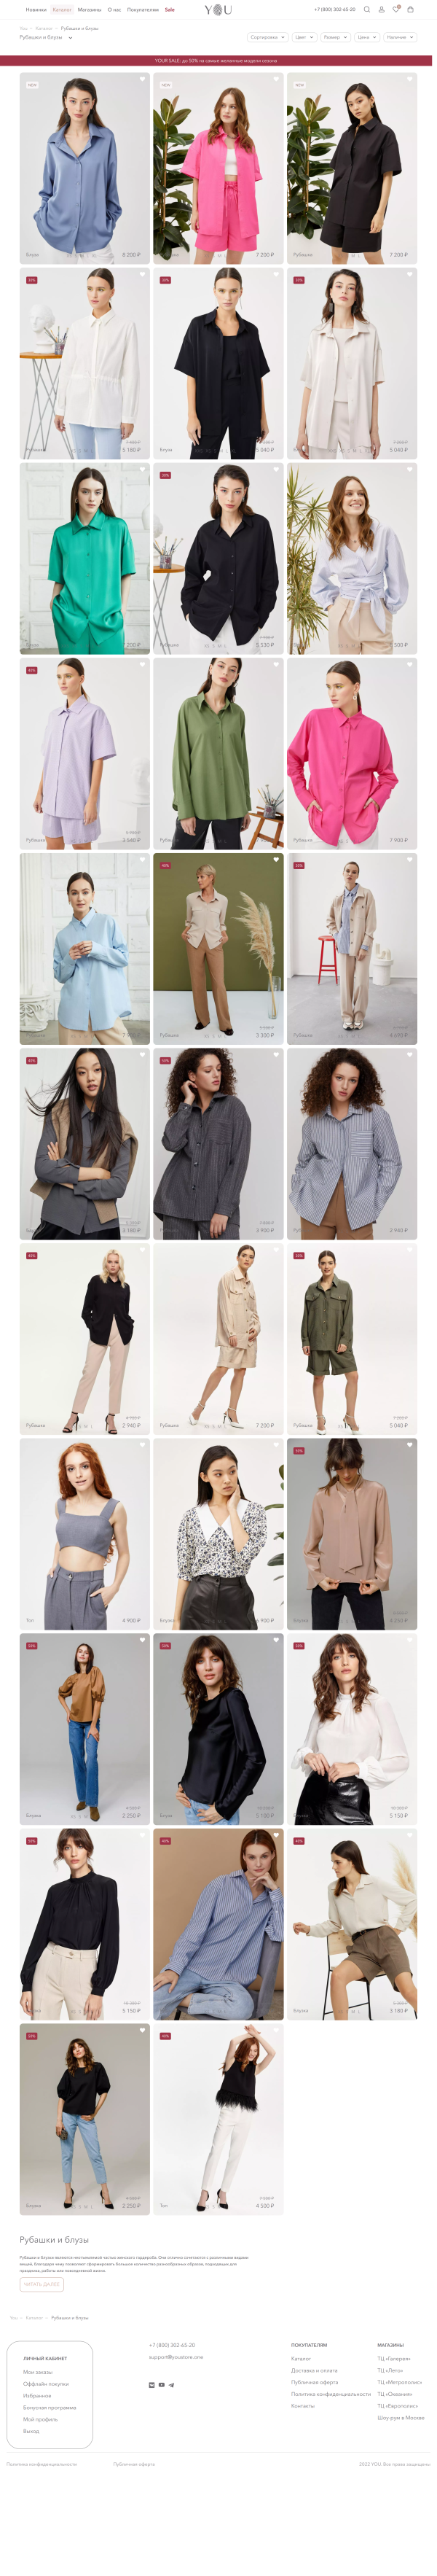 Десктоп-версия сайта Магазин женской одежды YOU. Версия 2020.